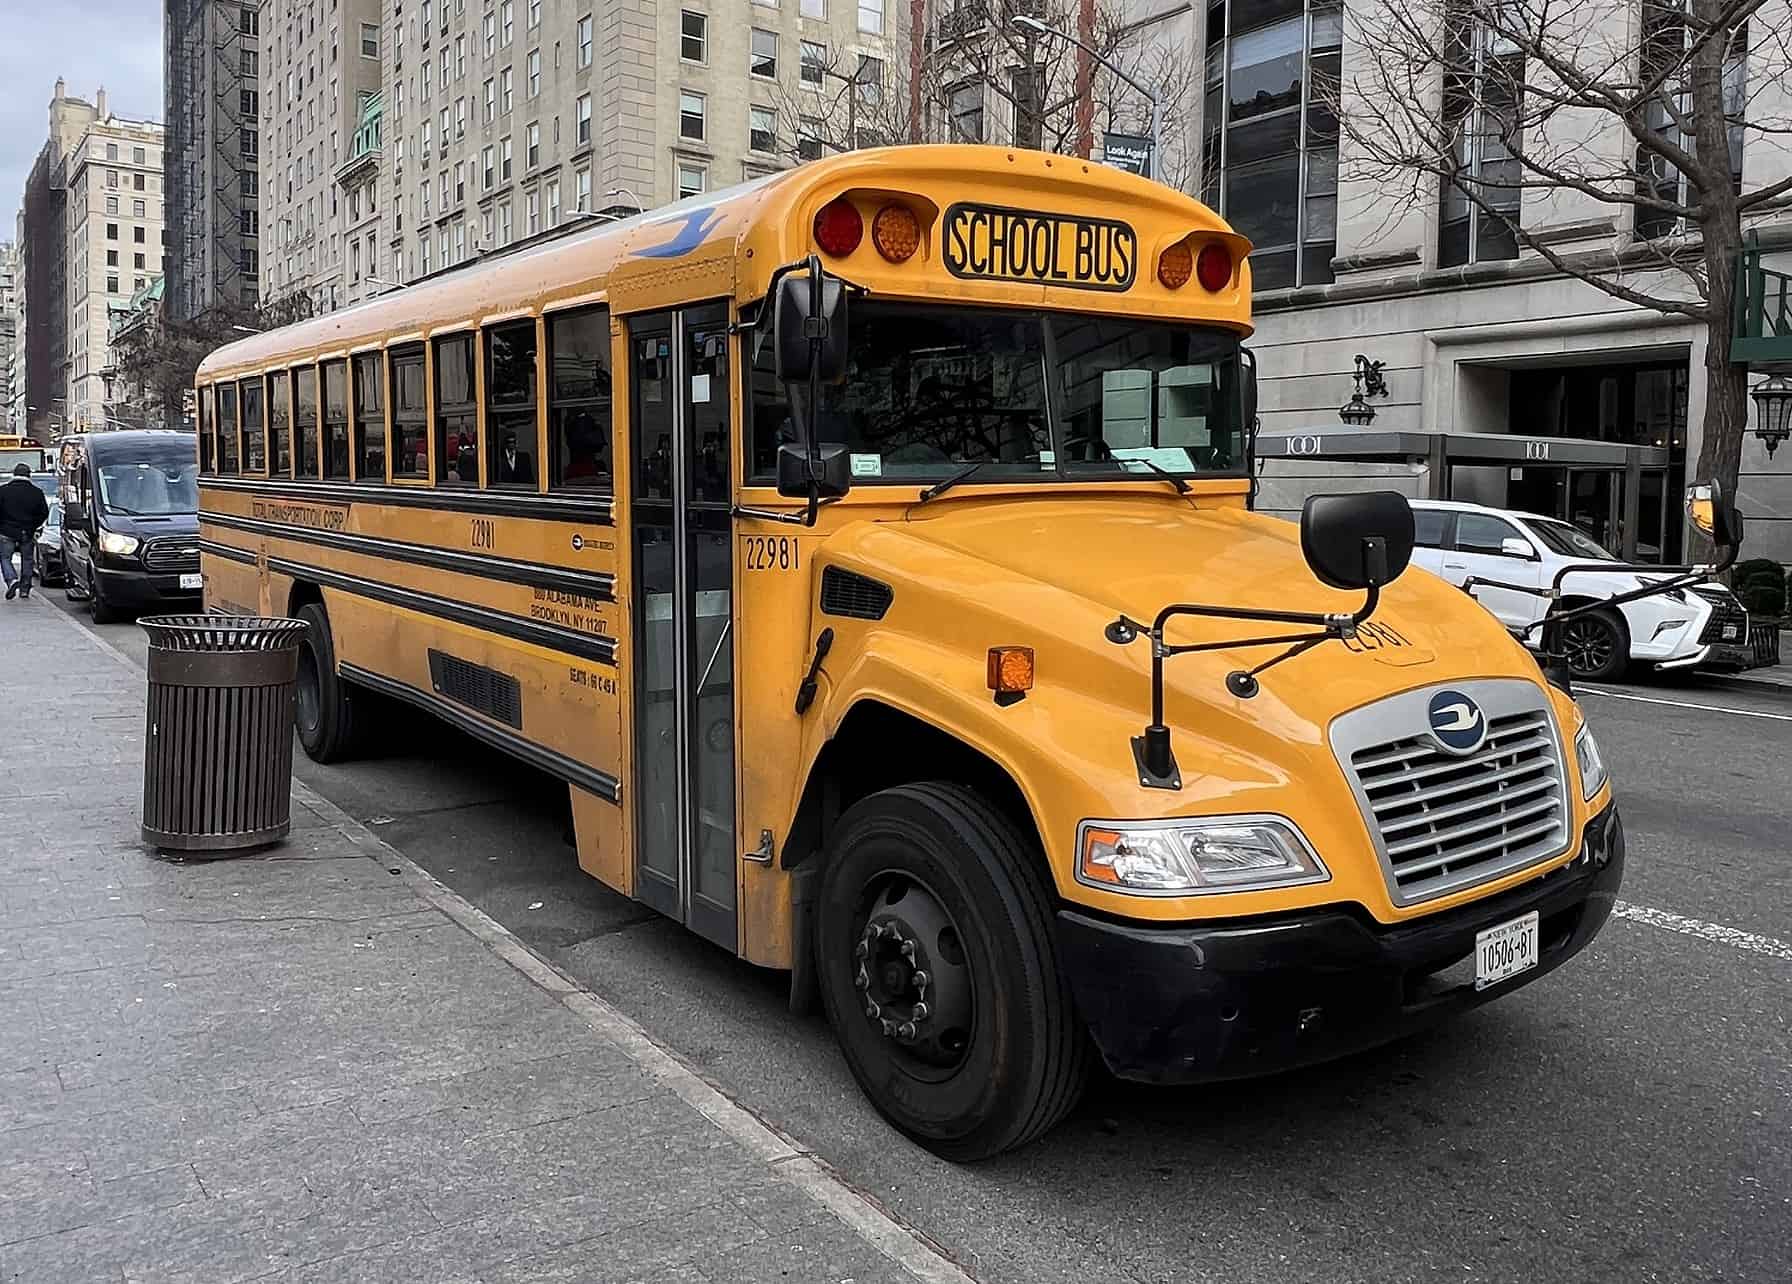 School Bus vor dem Metropolitan Museum of Art in New York City, USA.